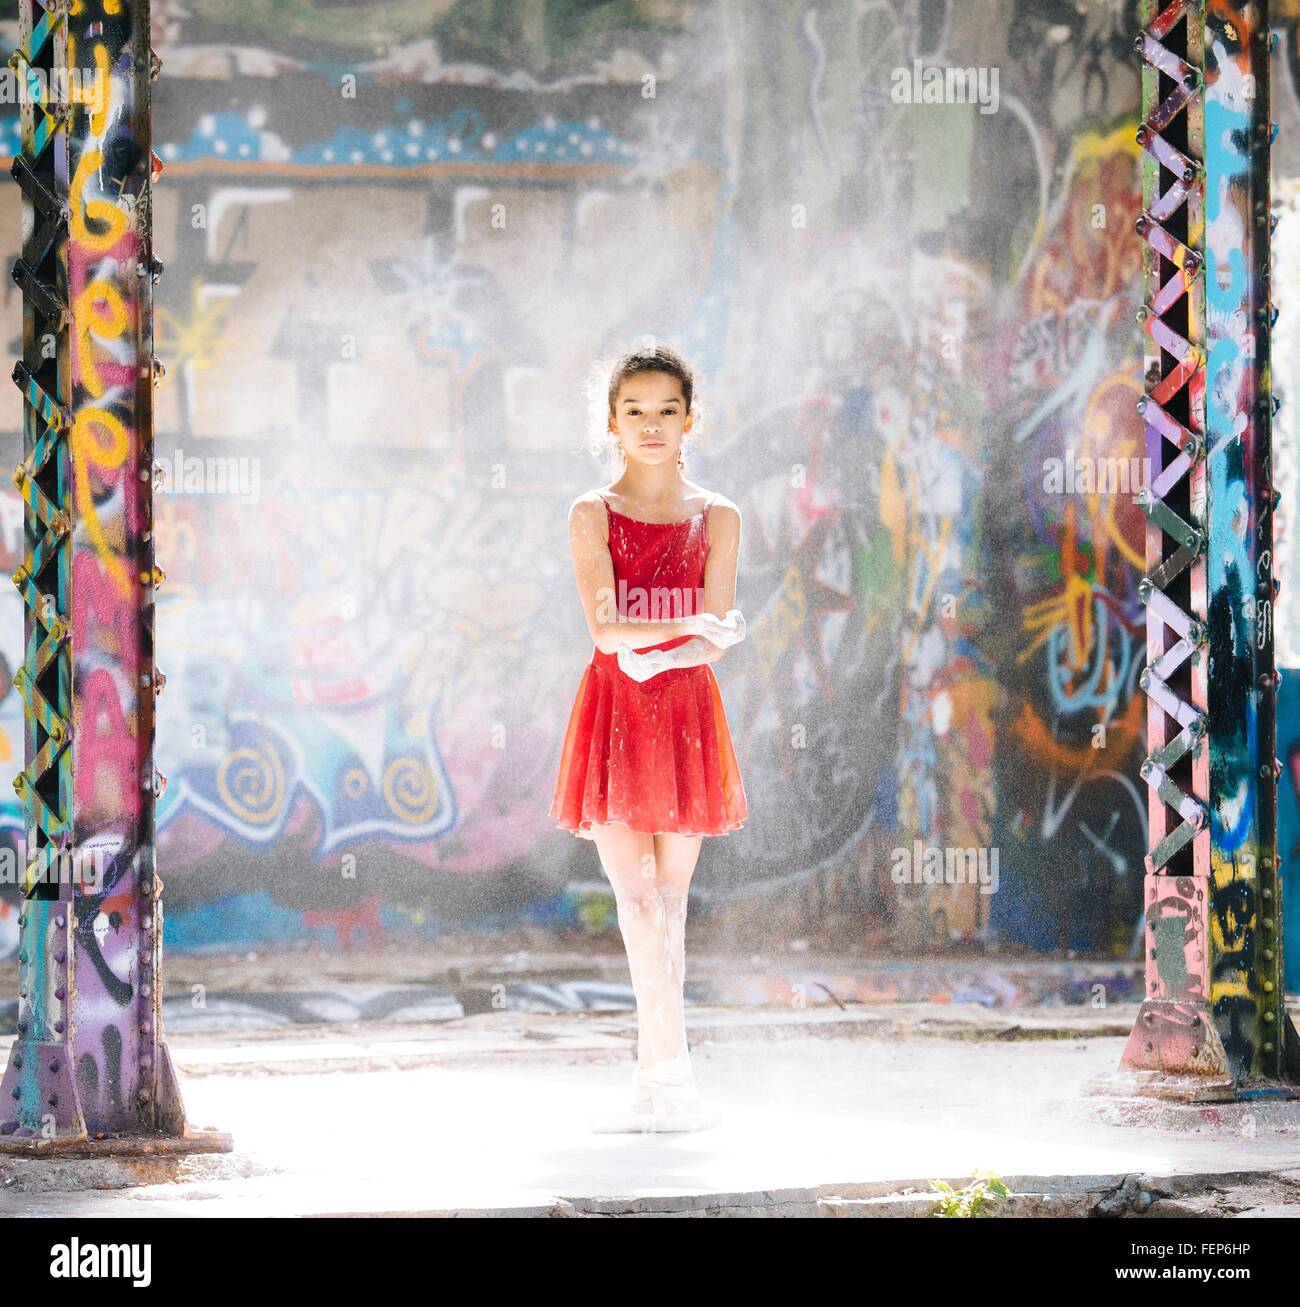 Portrait de danseuse de ballet girl couvert de poudre blanche en face de graffitis Banque D'Images